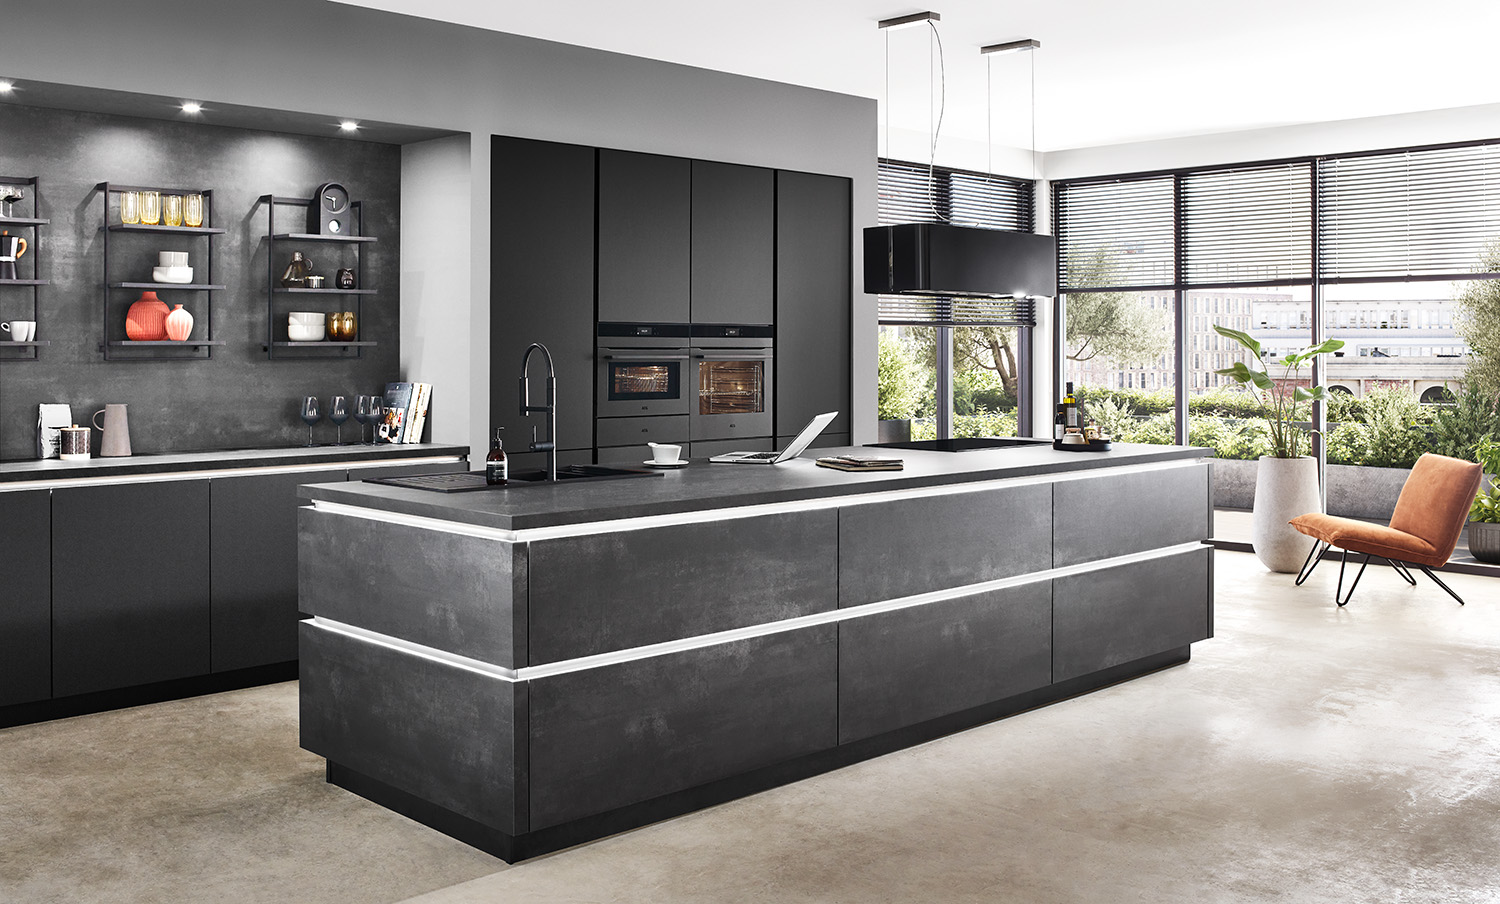 Moderne Kücheninnenräume mit eleganten dunklen Schränken, einer Insel, hochwertigen Geräten und einem gemütlichen Sitzbereich, der eine Mischung aus Funktionalität und Stil bietet.